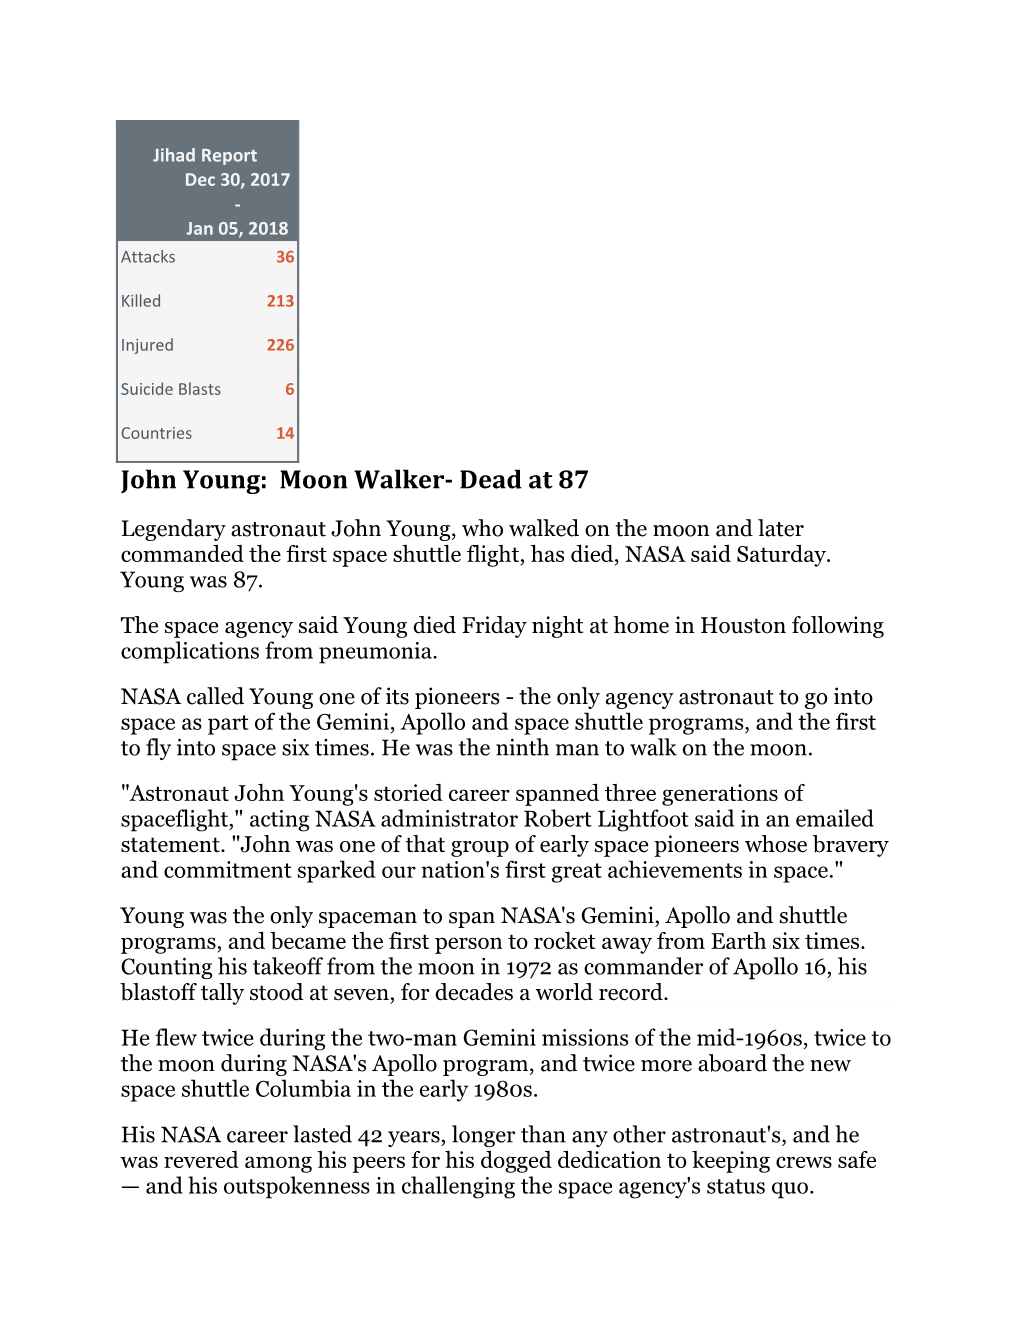 John Young: Moon Walker- Dead at 87